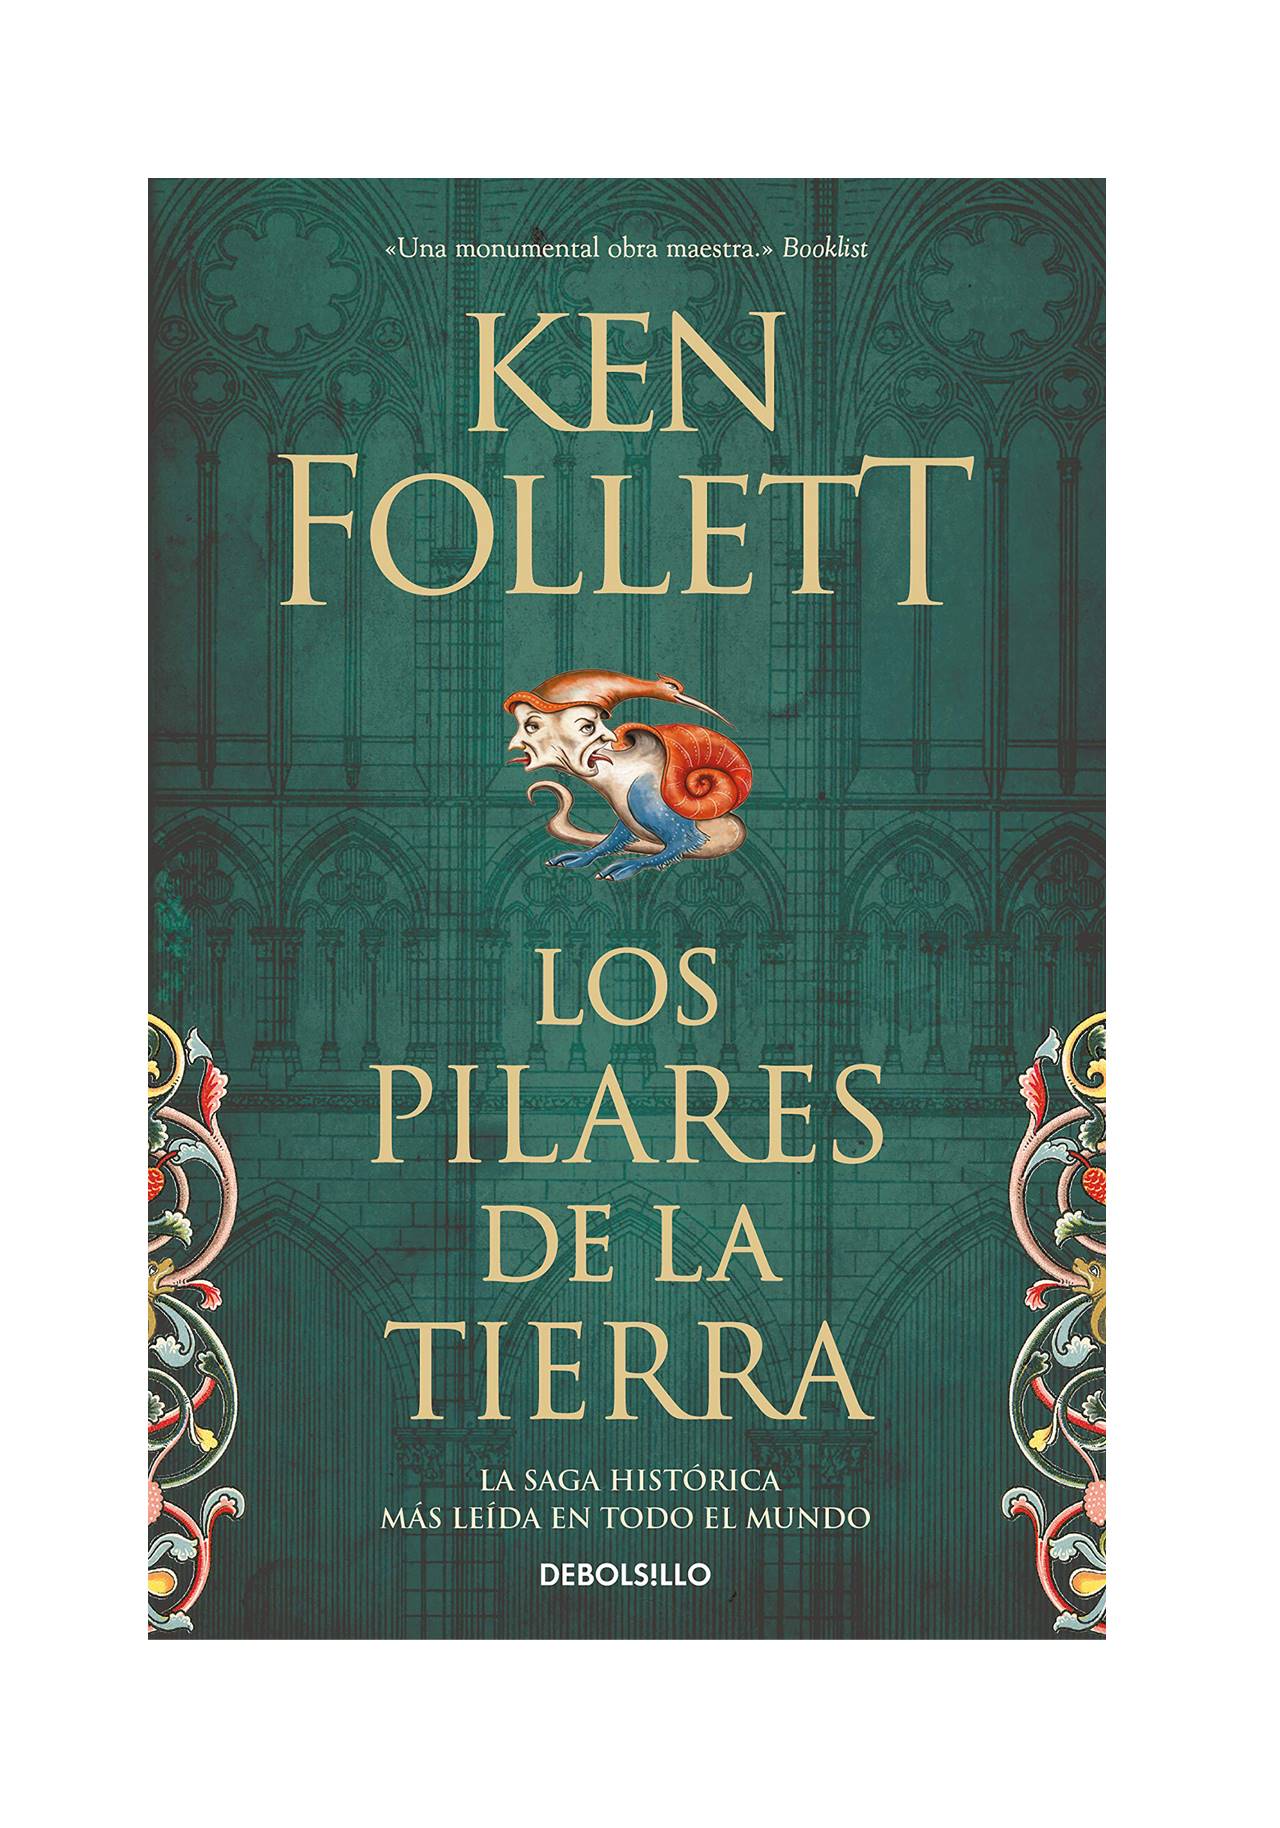 Novelas históricas imprescindibles: Los Pilares de la Tierra de Ken Follett (2017, Plaza & Janes Editores)